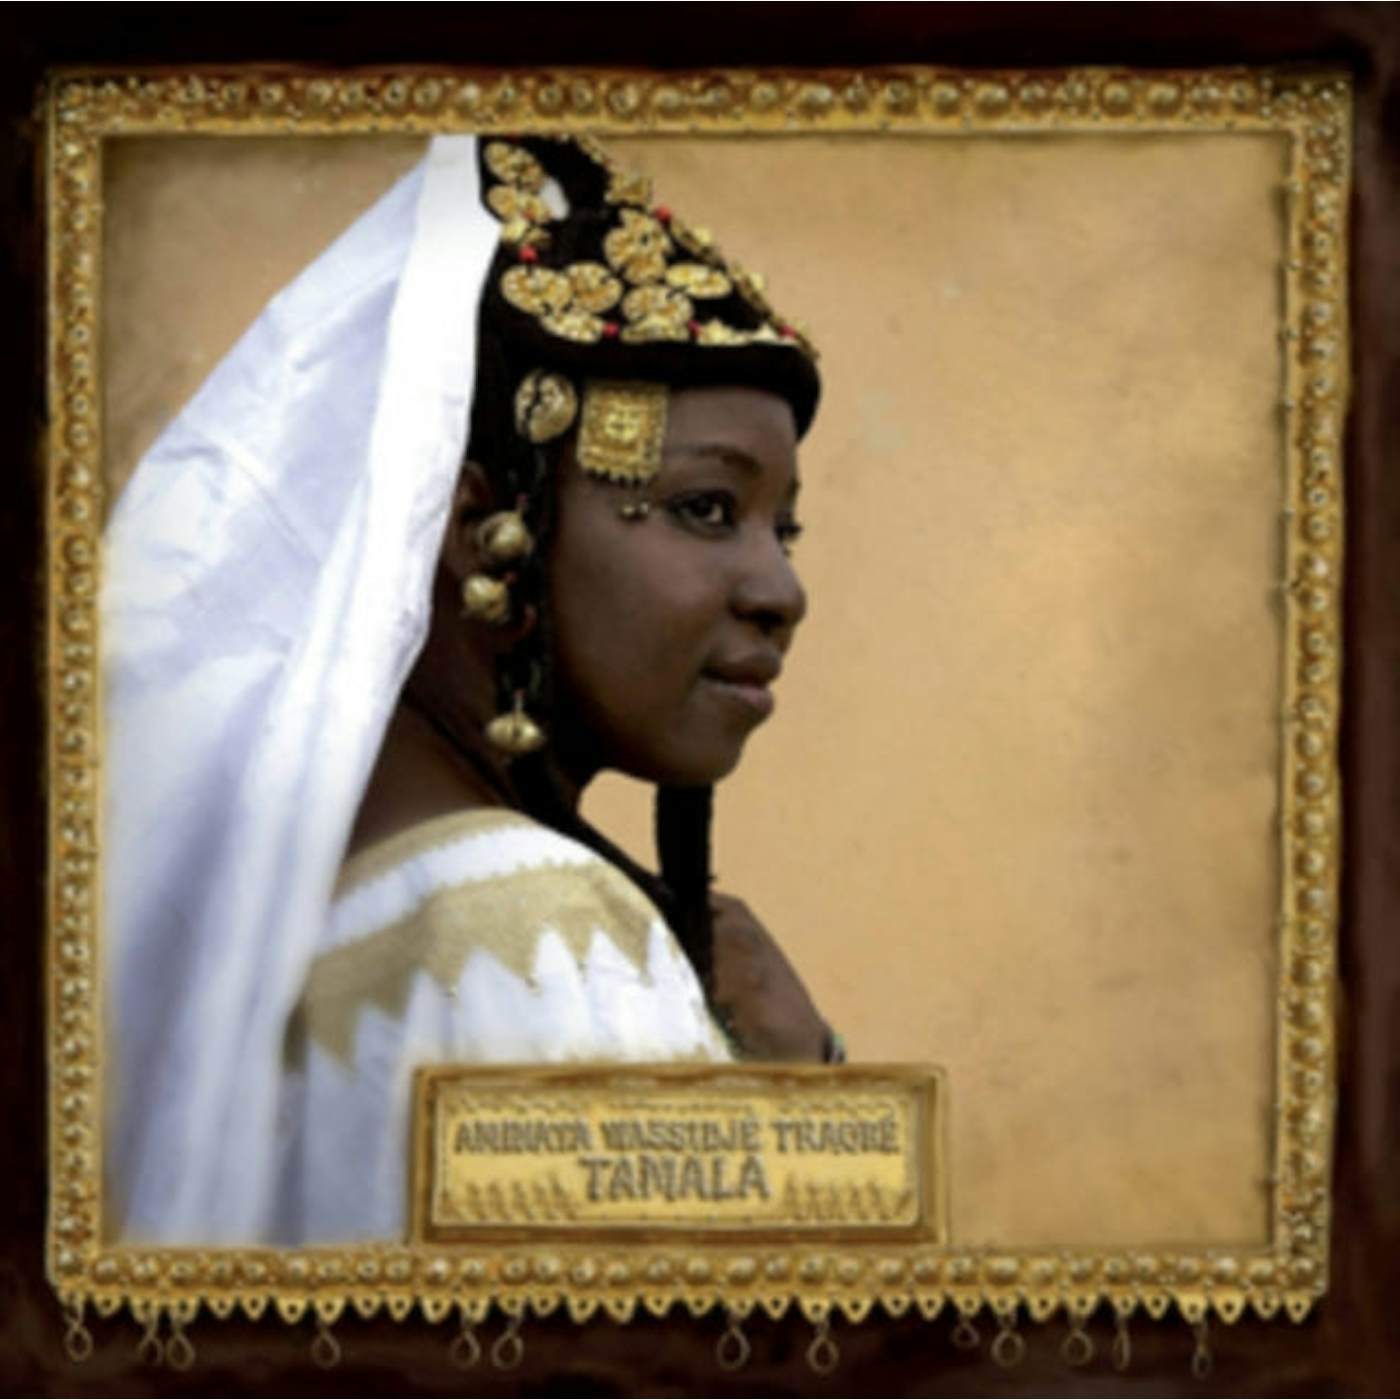 Aminata Wassidjé Traoré LP - Tamala (Vinyl)